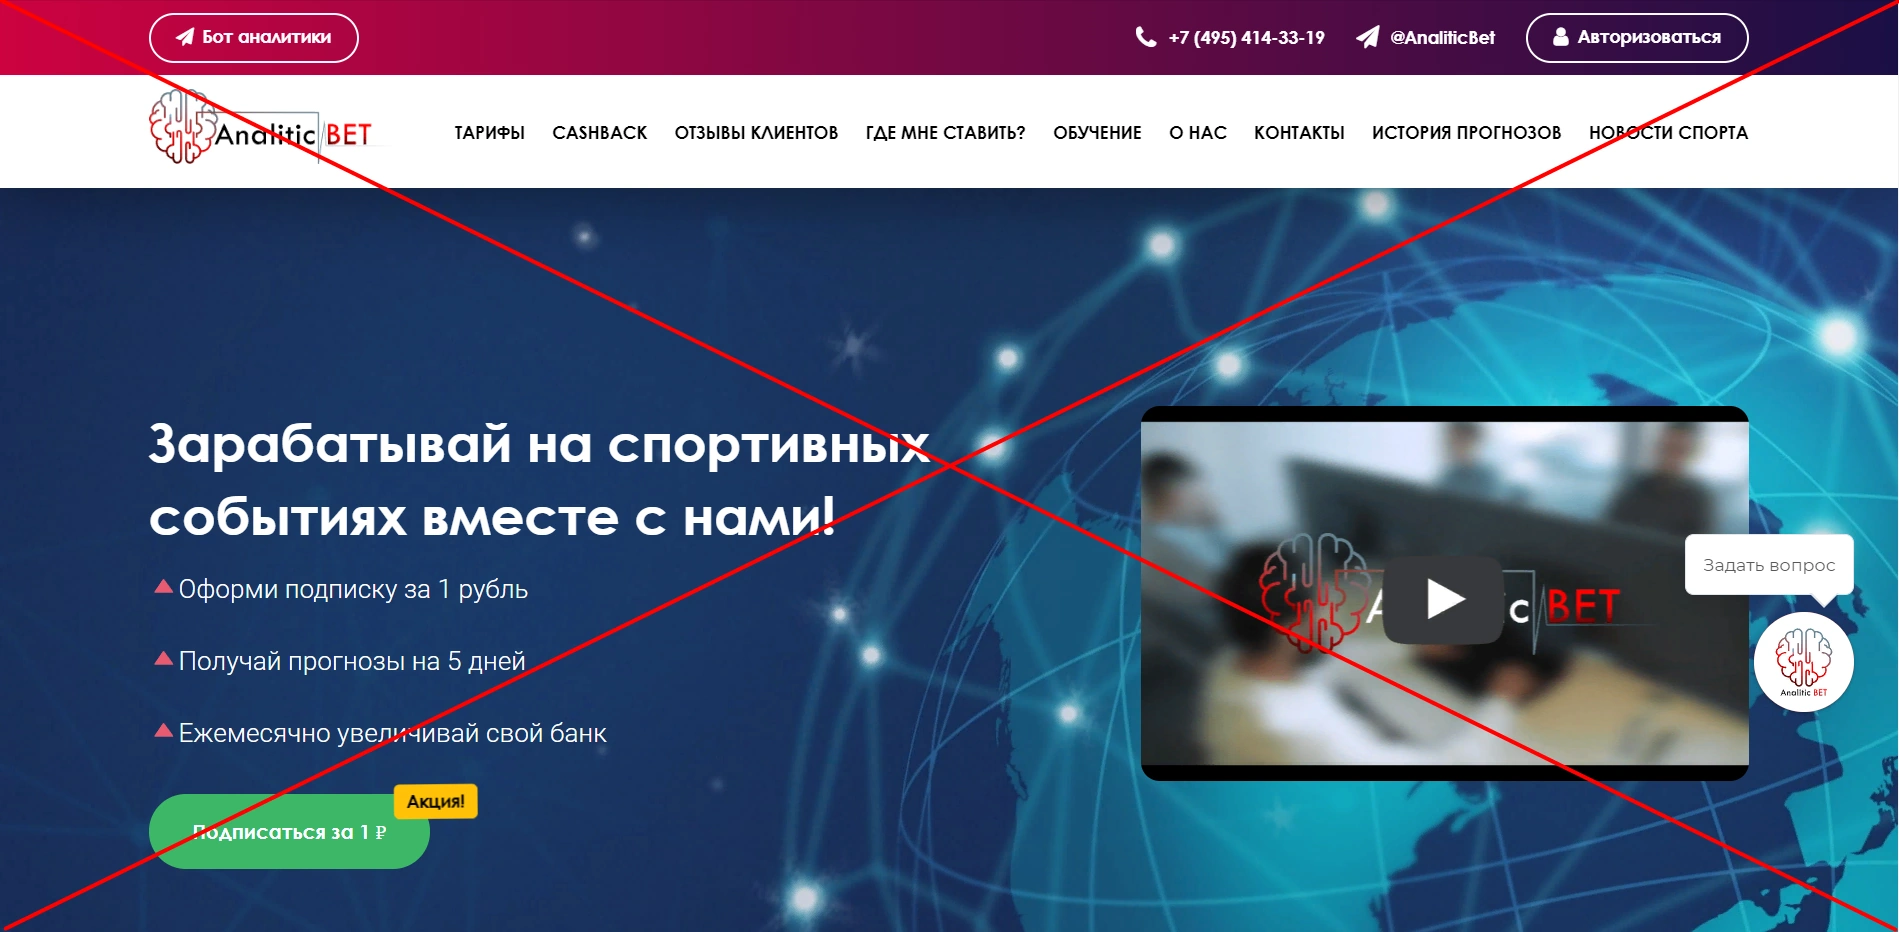 AnaliticBet снимают деньги - как отменить подписку AnaliticBet Moskva RUS. Отзывы